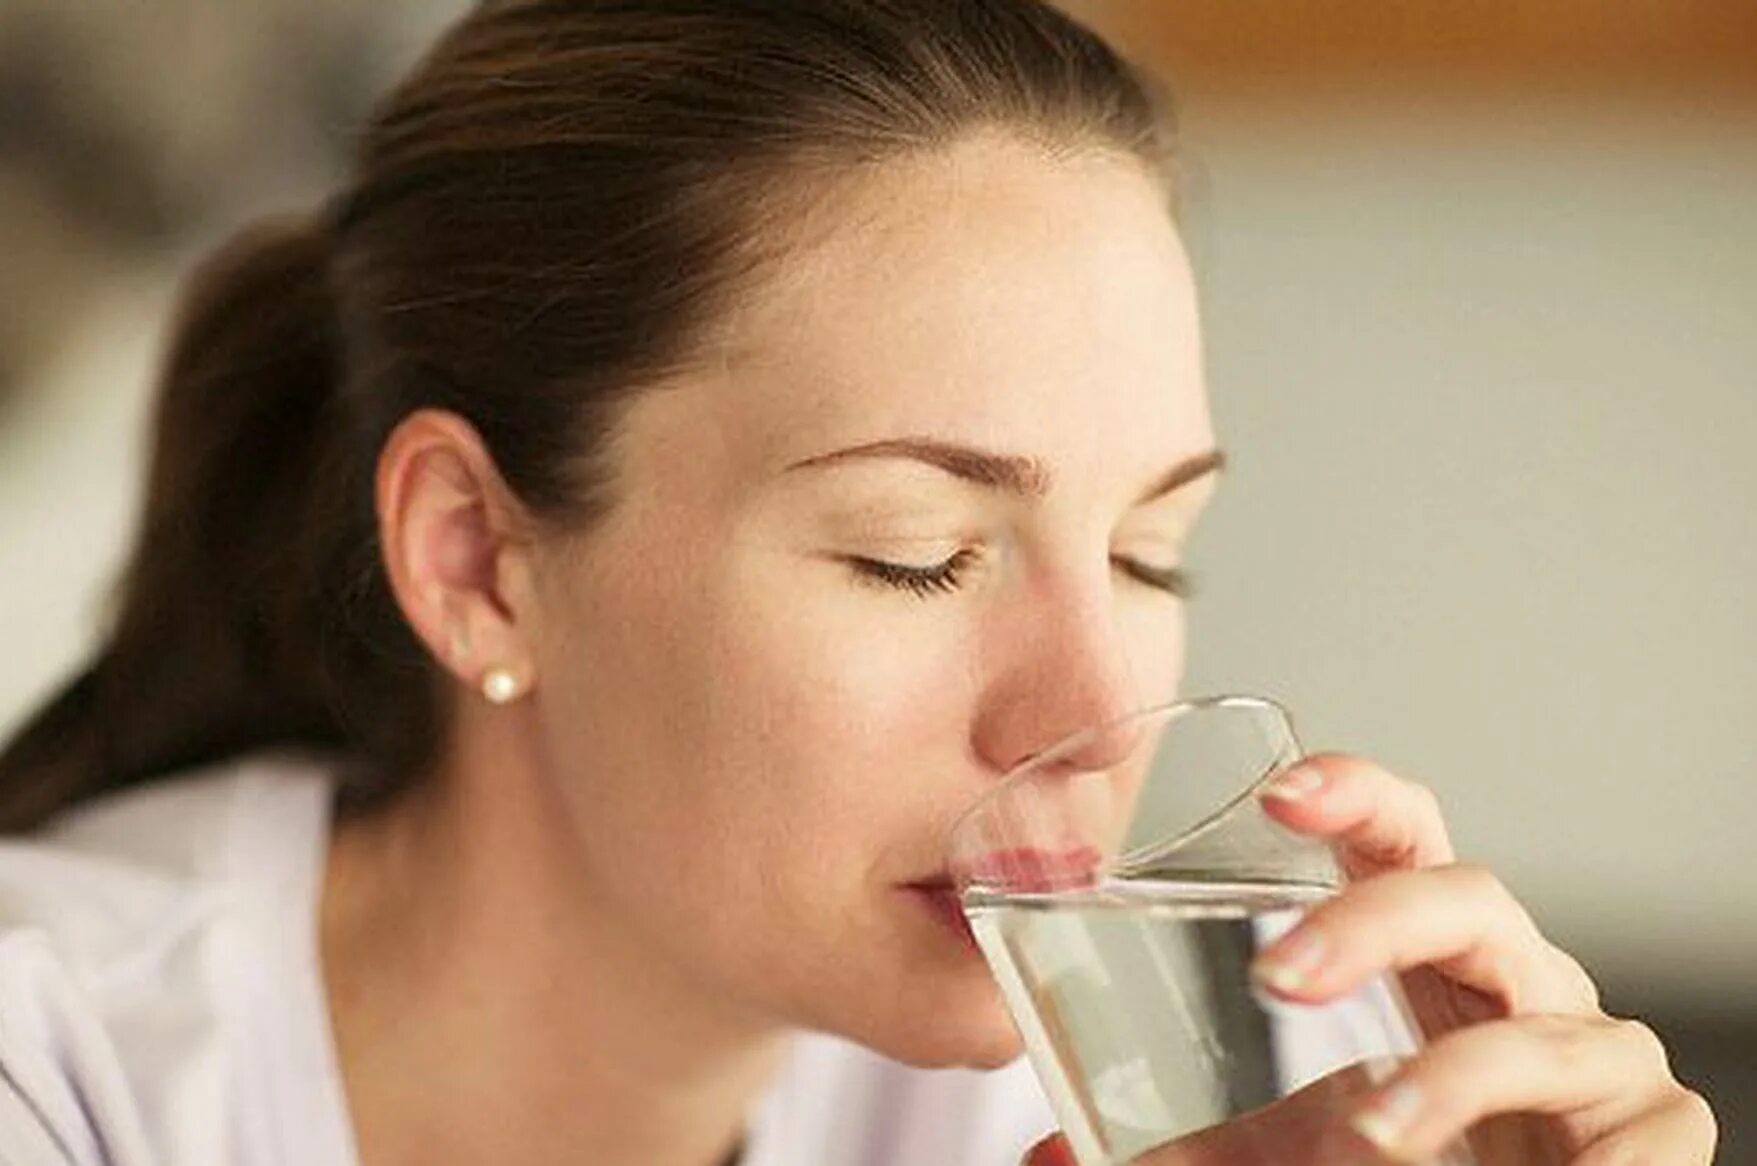 Сколько пьет пациент. Девушка пьет воду. Обильное питье. Питье пациента. Женщина со стаканом воды.